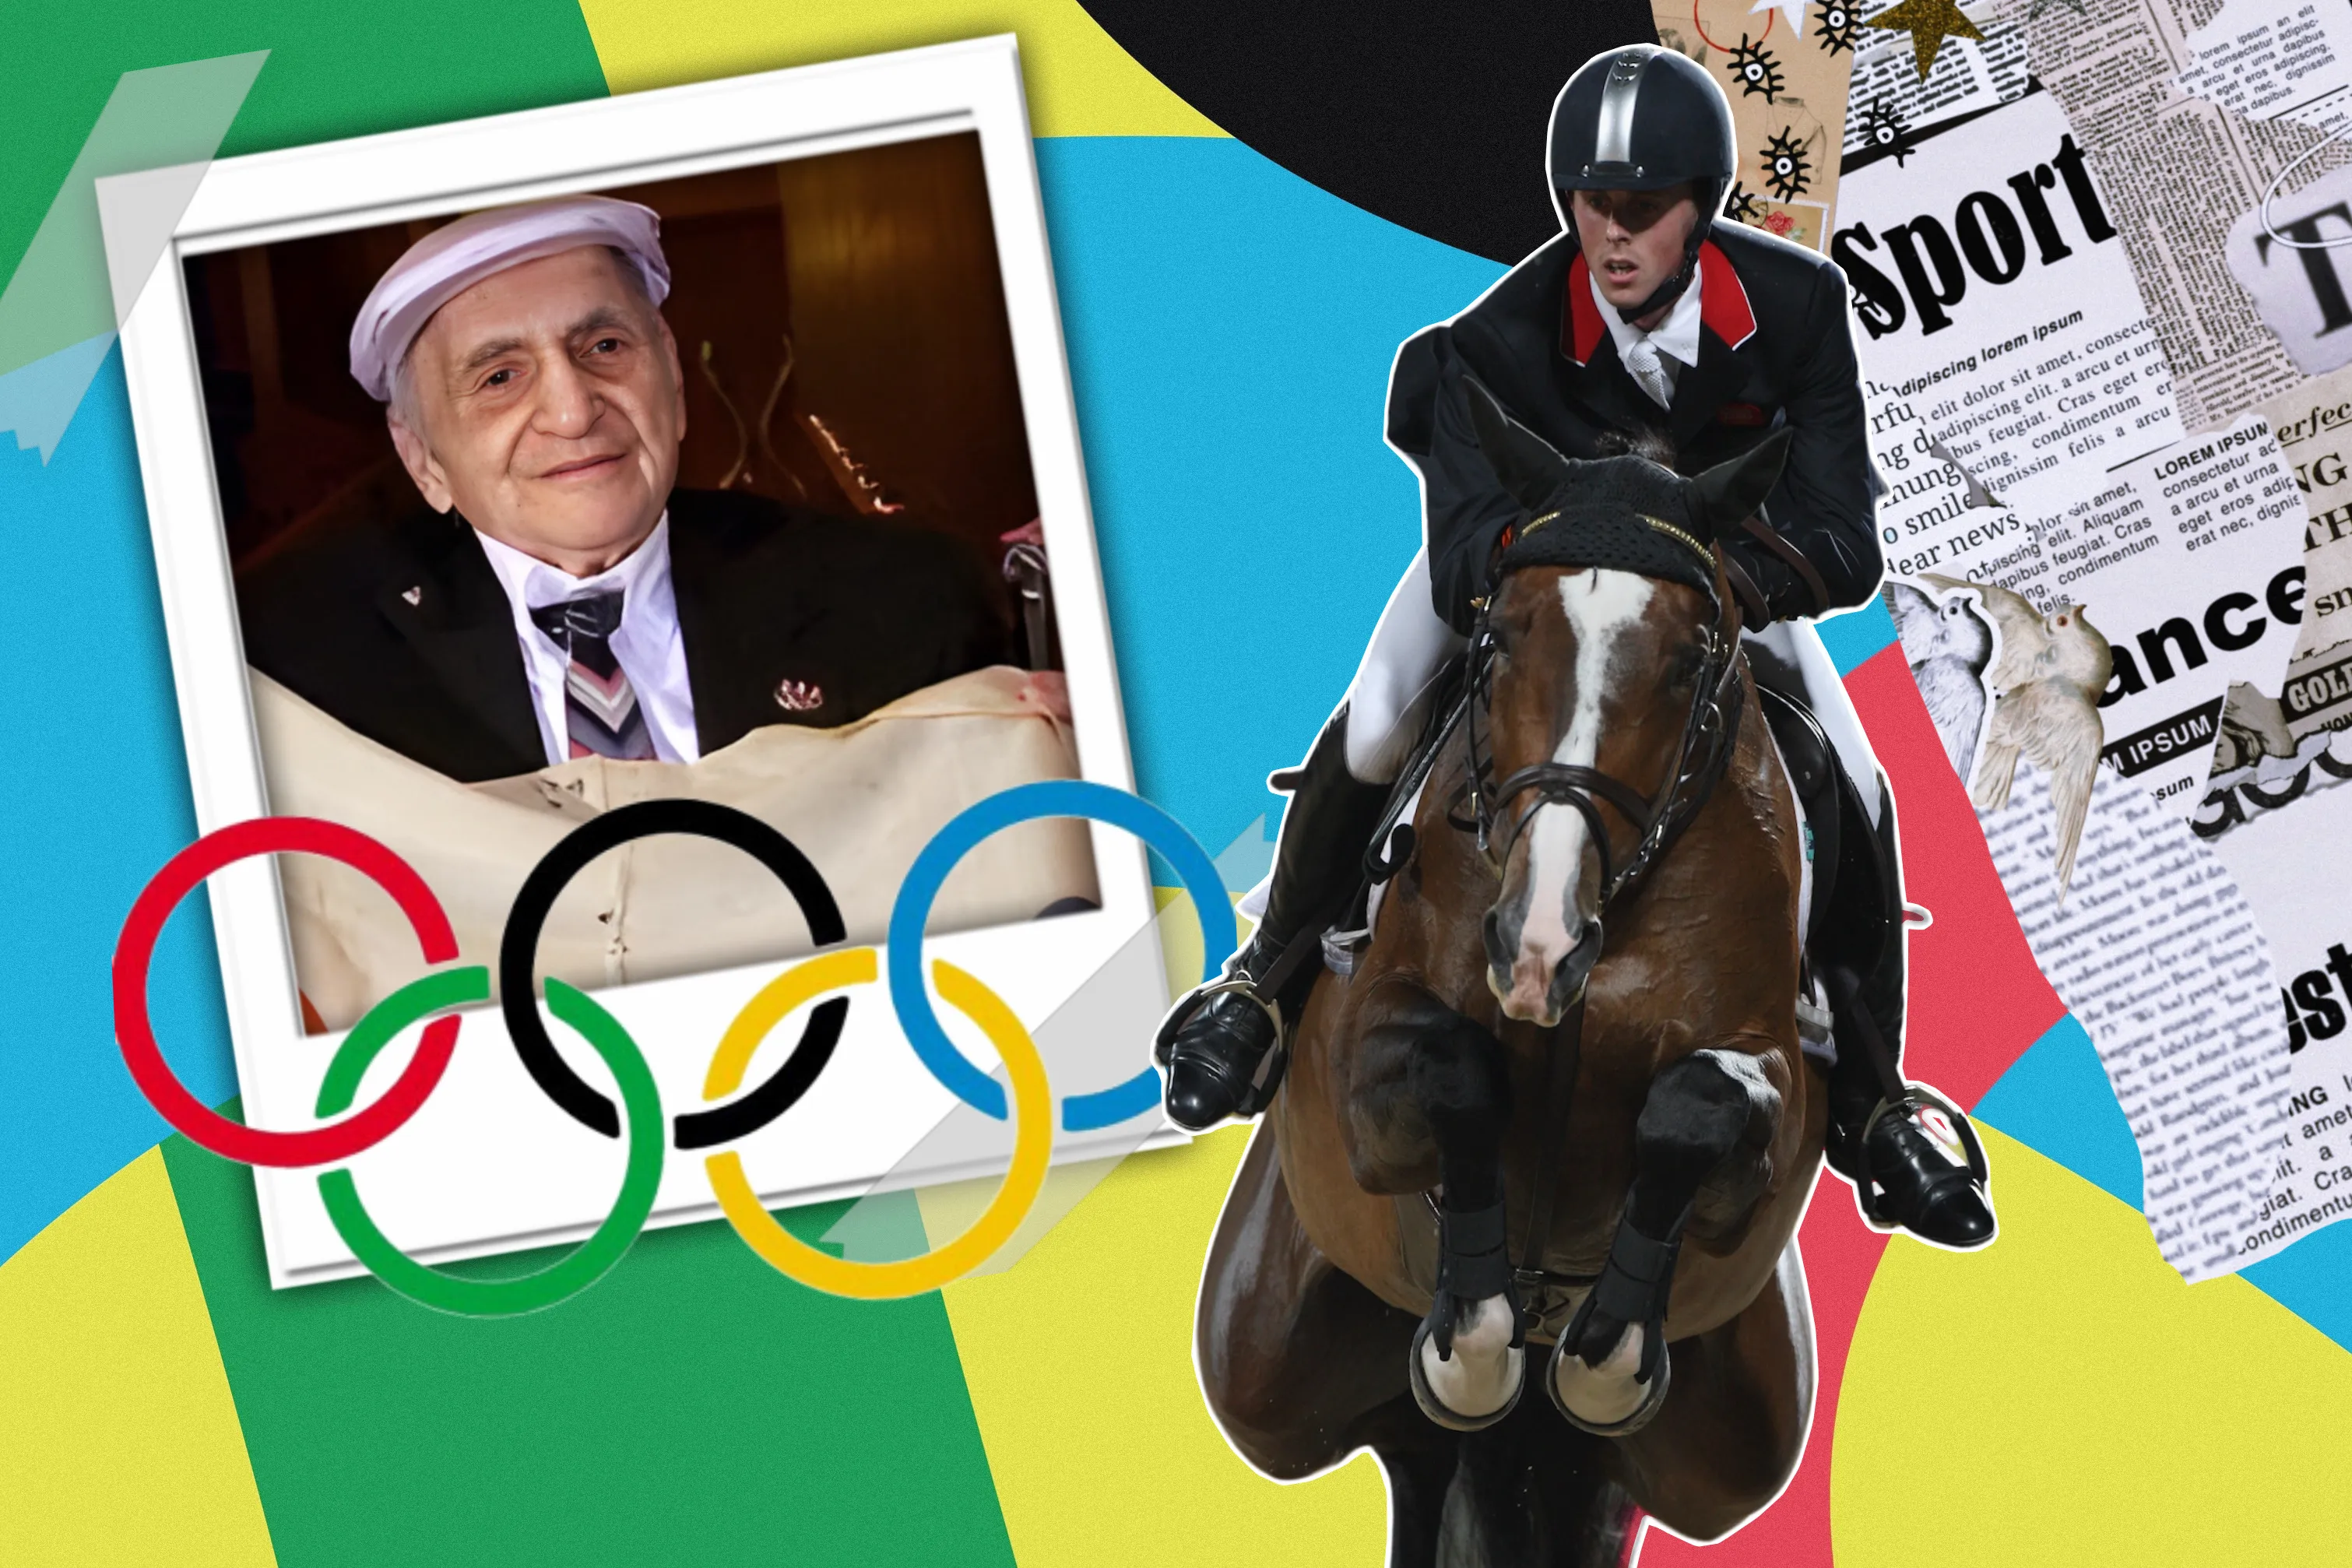 Допинг коней и покушение: 5 самых громких скандалов за всю историю Олимпийских игр